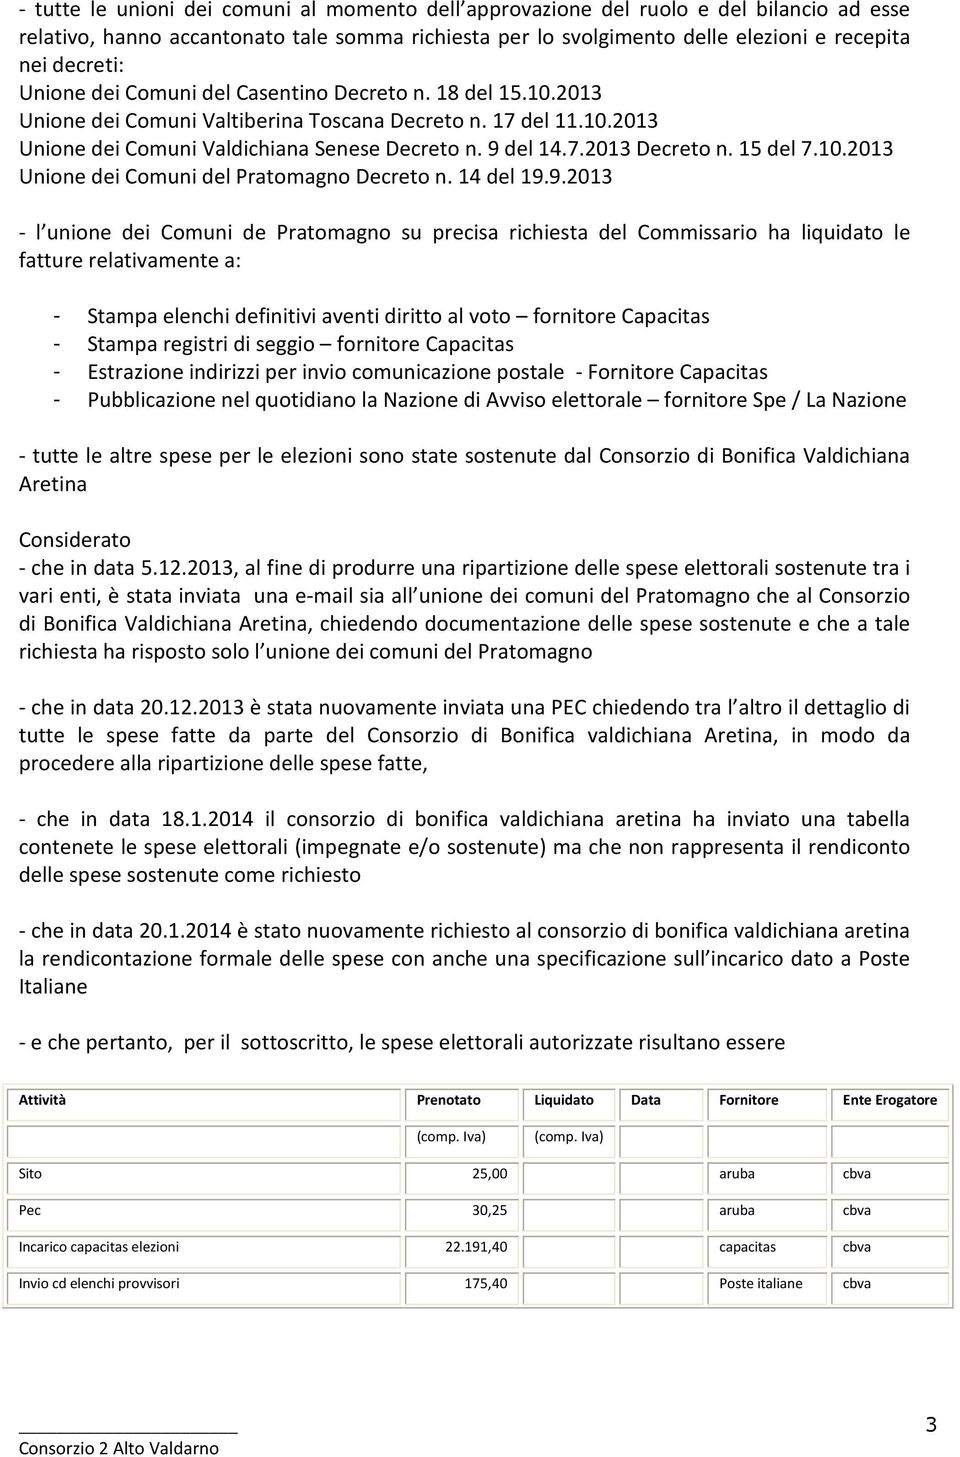 15 del 7.10.2013 Unione dei Comuni del Pratomagno Decreto n. 14 del 19.